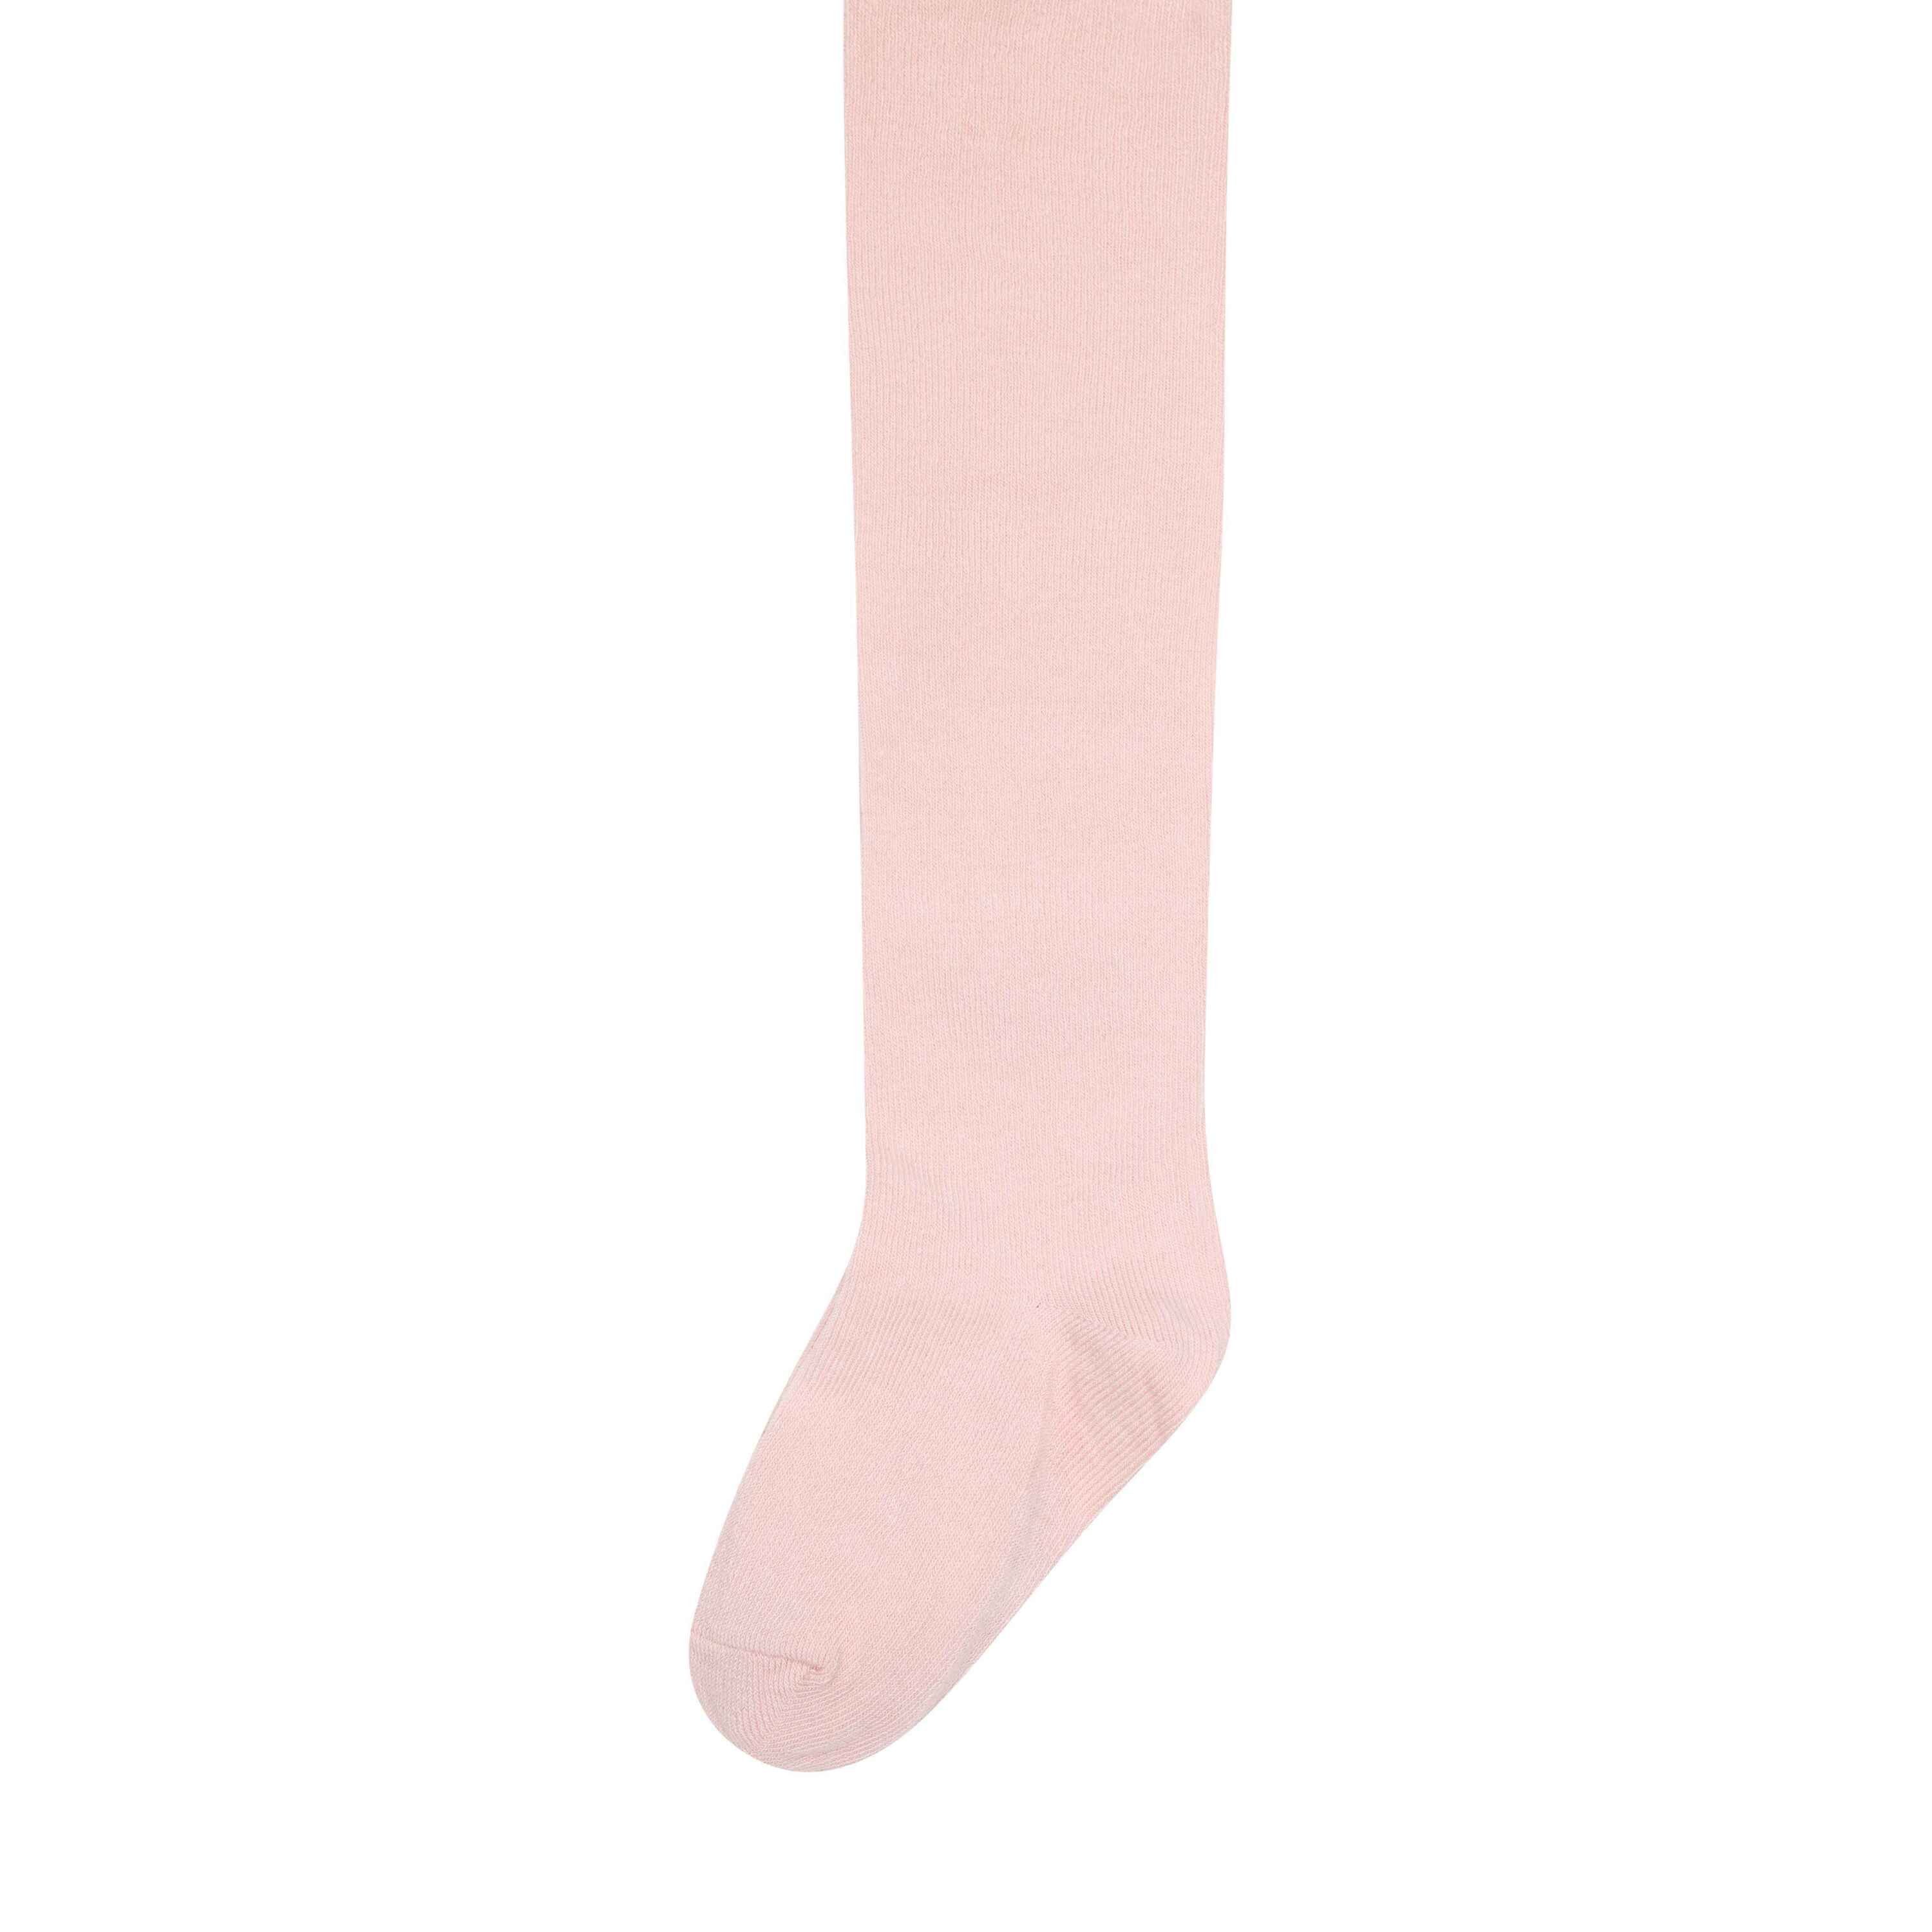 Strumphosen Steiff Strickstrumpfhose Pink GOTS + Socken Silver Strumpfhosen